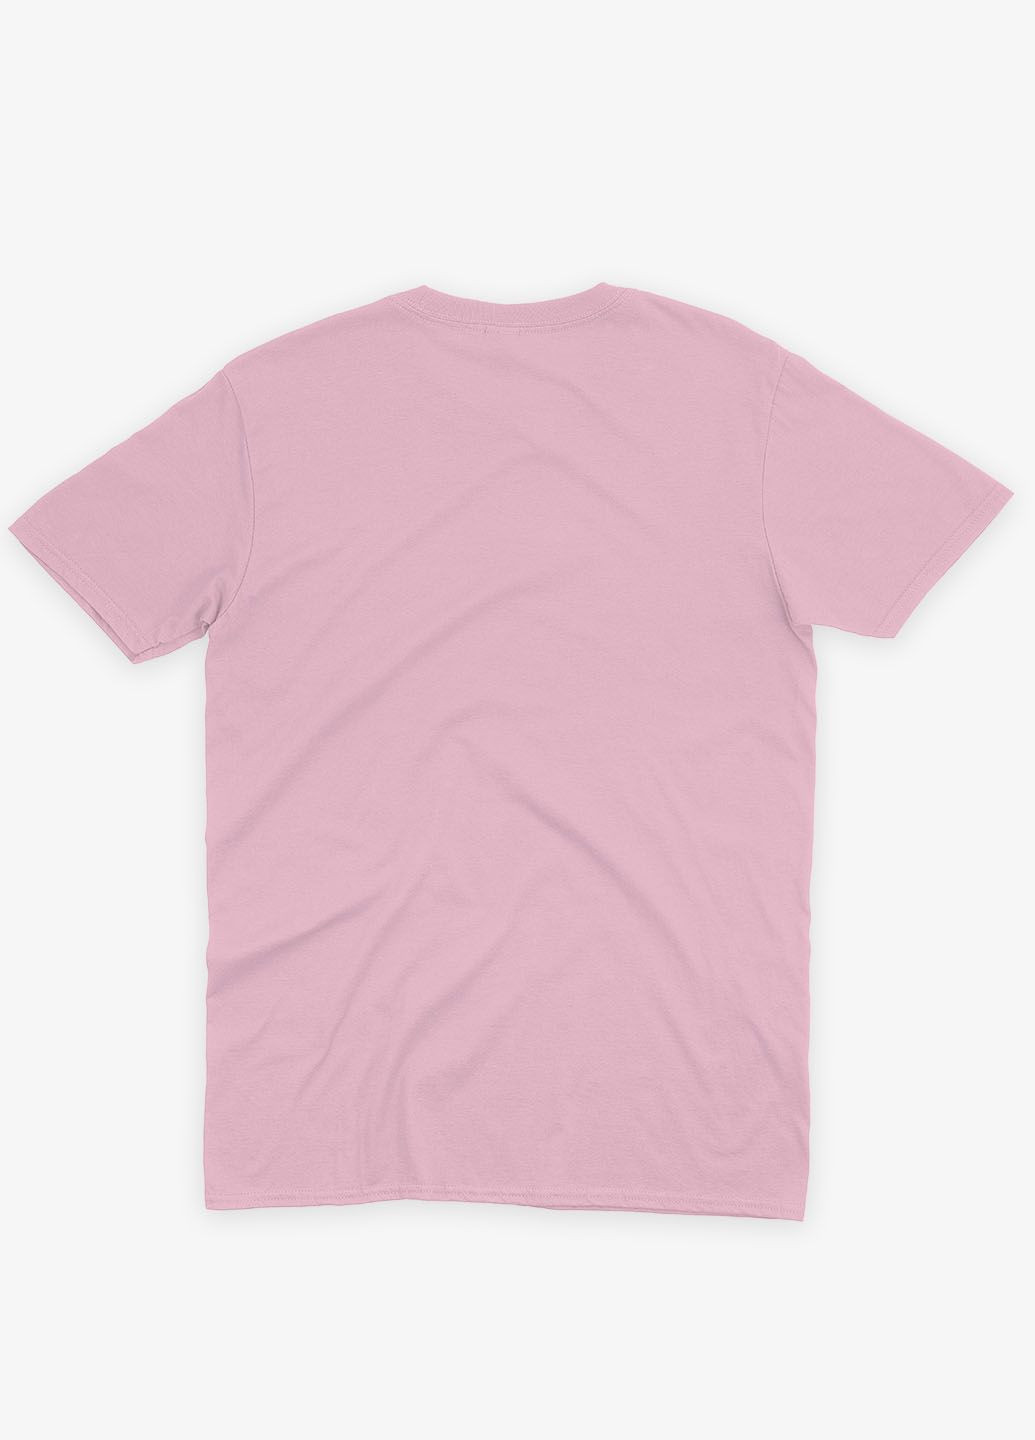 Світло-рожева демісезонна футболка для дівчинки з принтом супергероїв dc 146-152 см блідо-рожевий (ts001-1-lpinkj-006-004-001-g) Modno